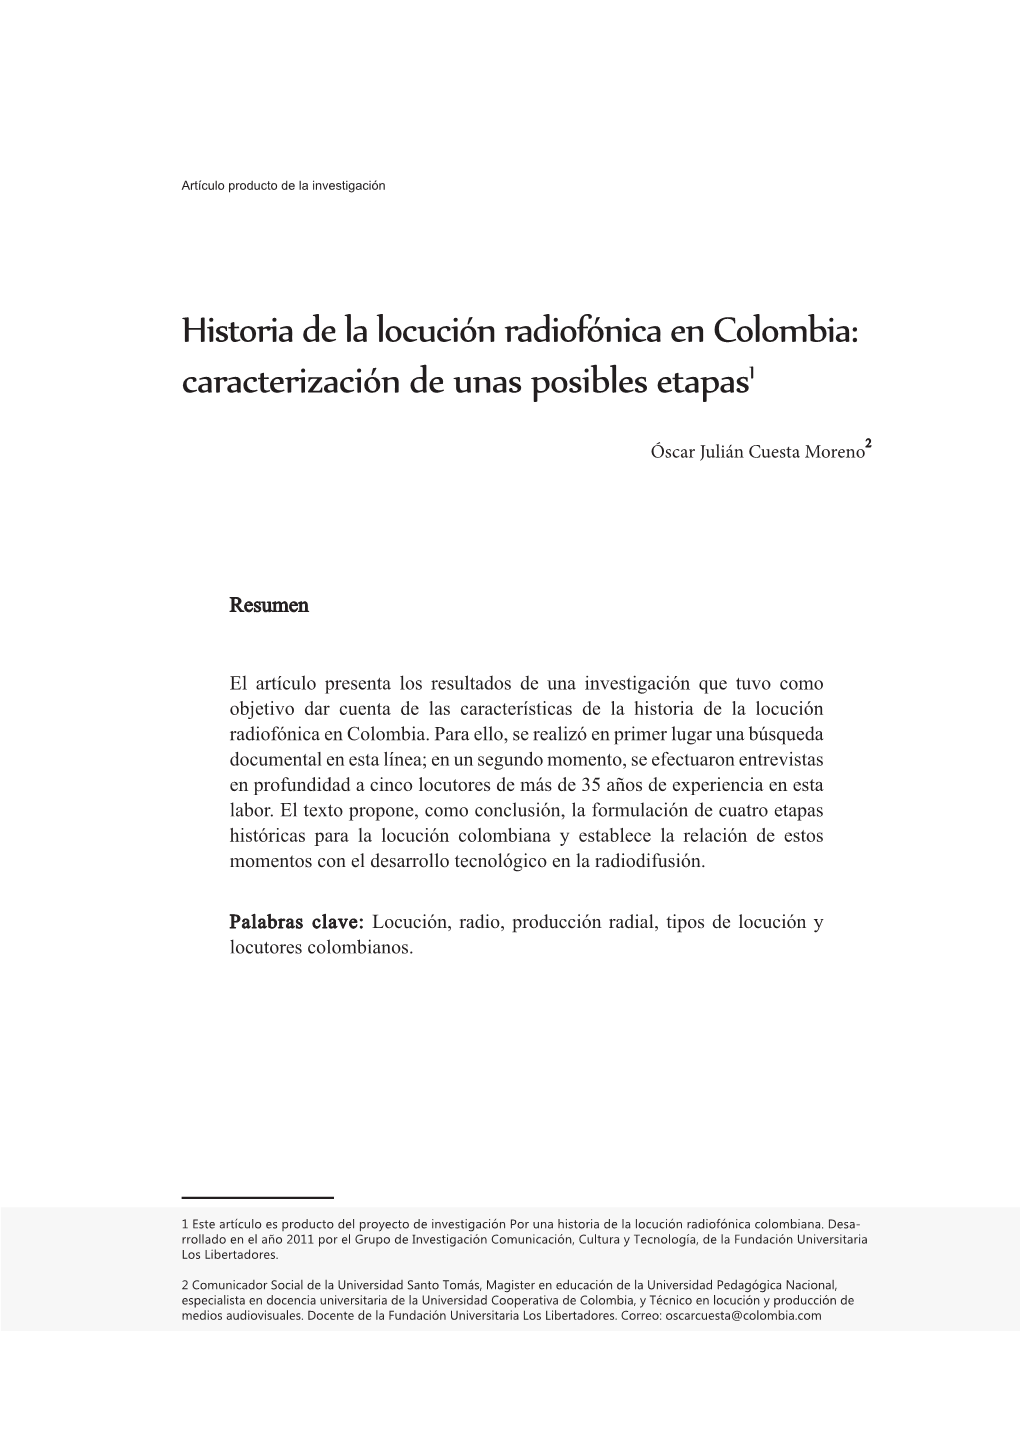 Historia De La Locución Radiofónica En Colombia: Caracterización De Unas Posibles Etapas1